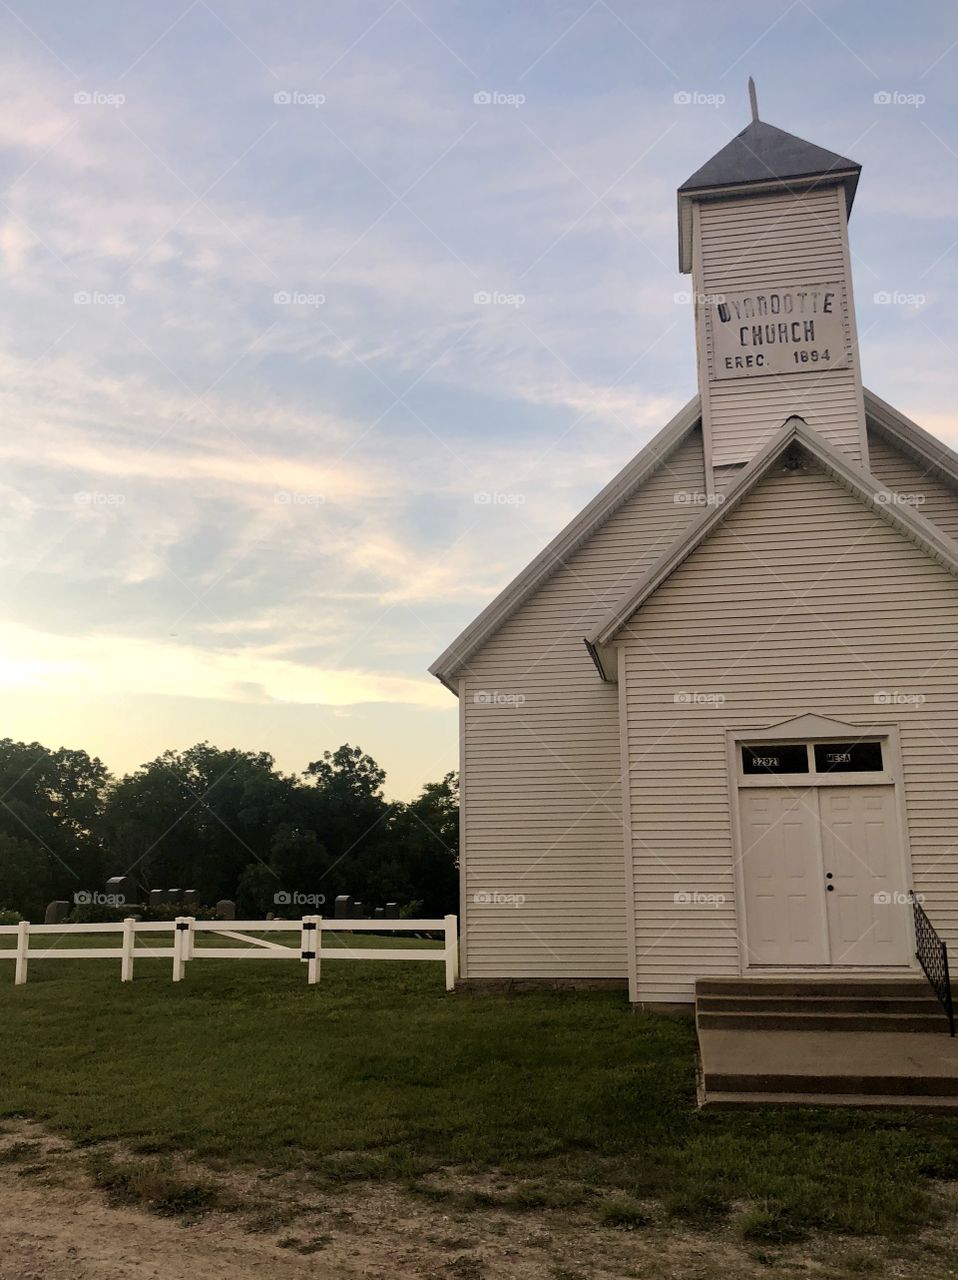 A small town church in Missouri. 